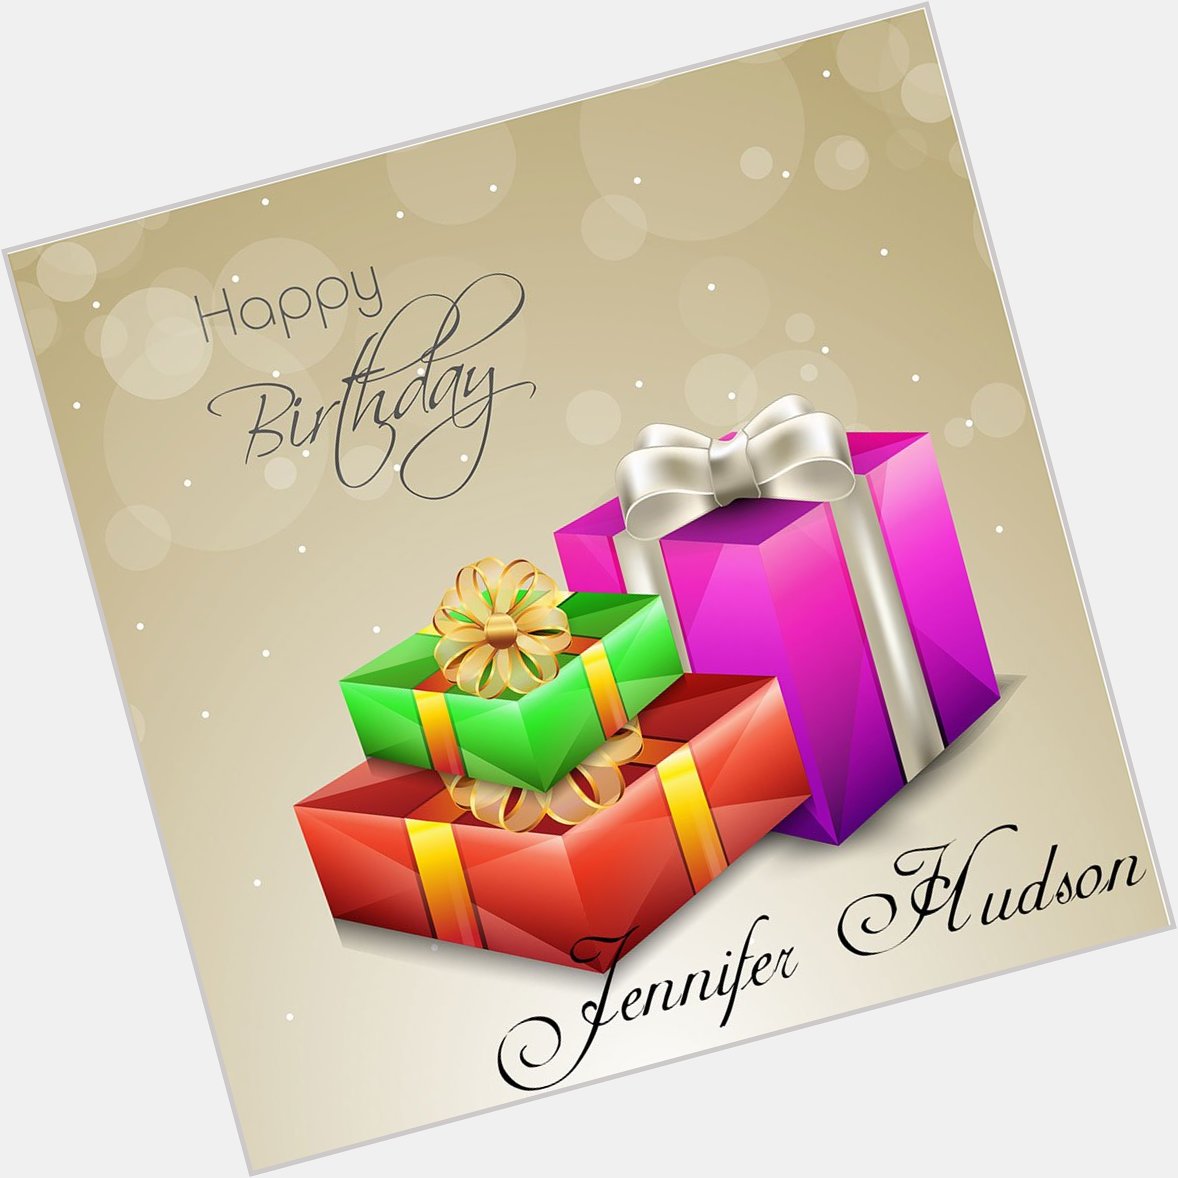 Happy Birthday! Jennifer Hudson 